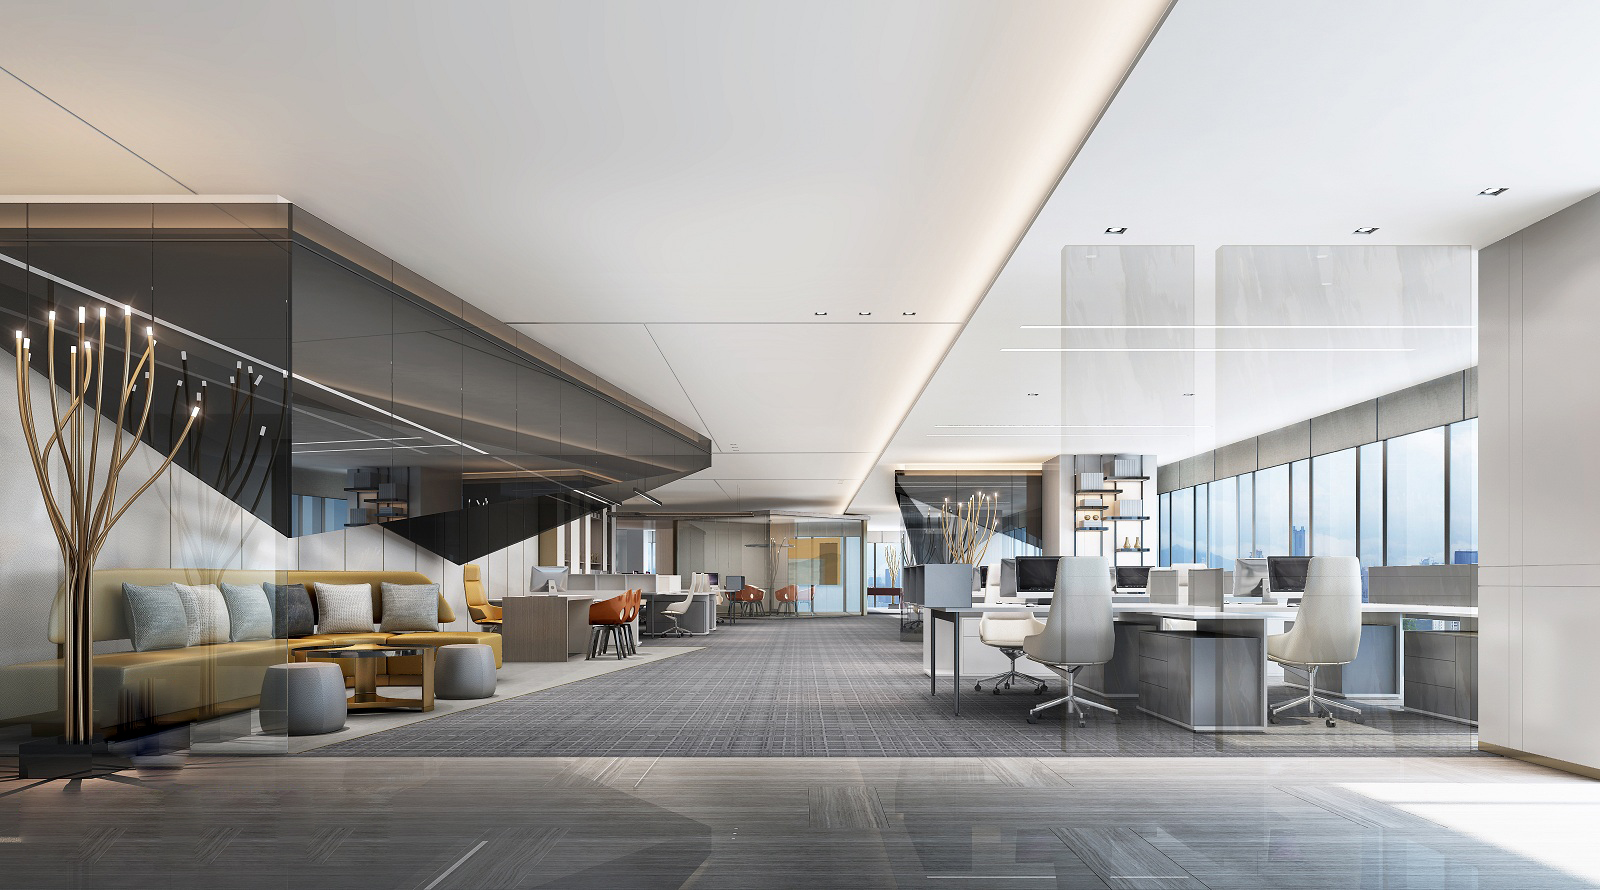 现代风格 北欧风格 办公空间 办公室 休息区 样板间 效果图 3d模型